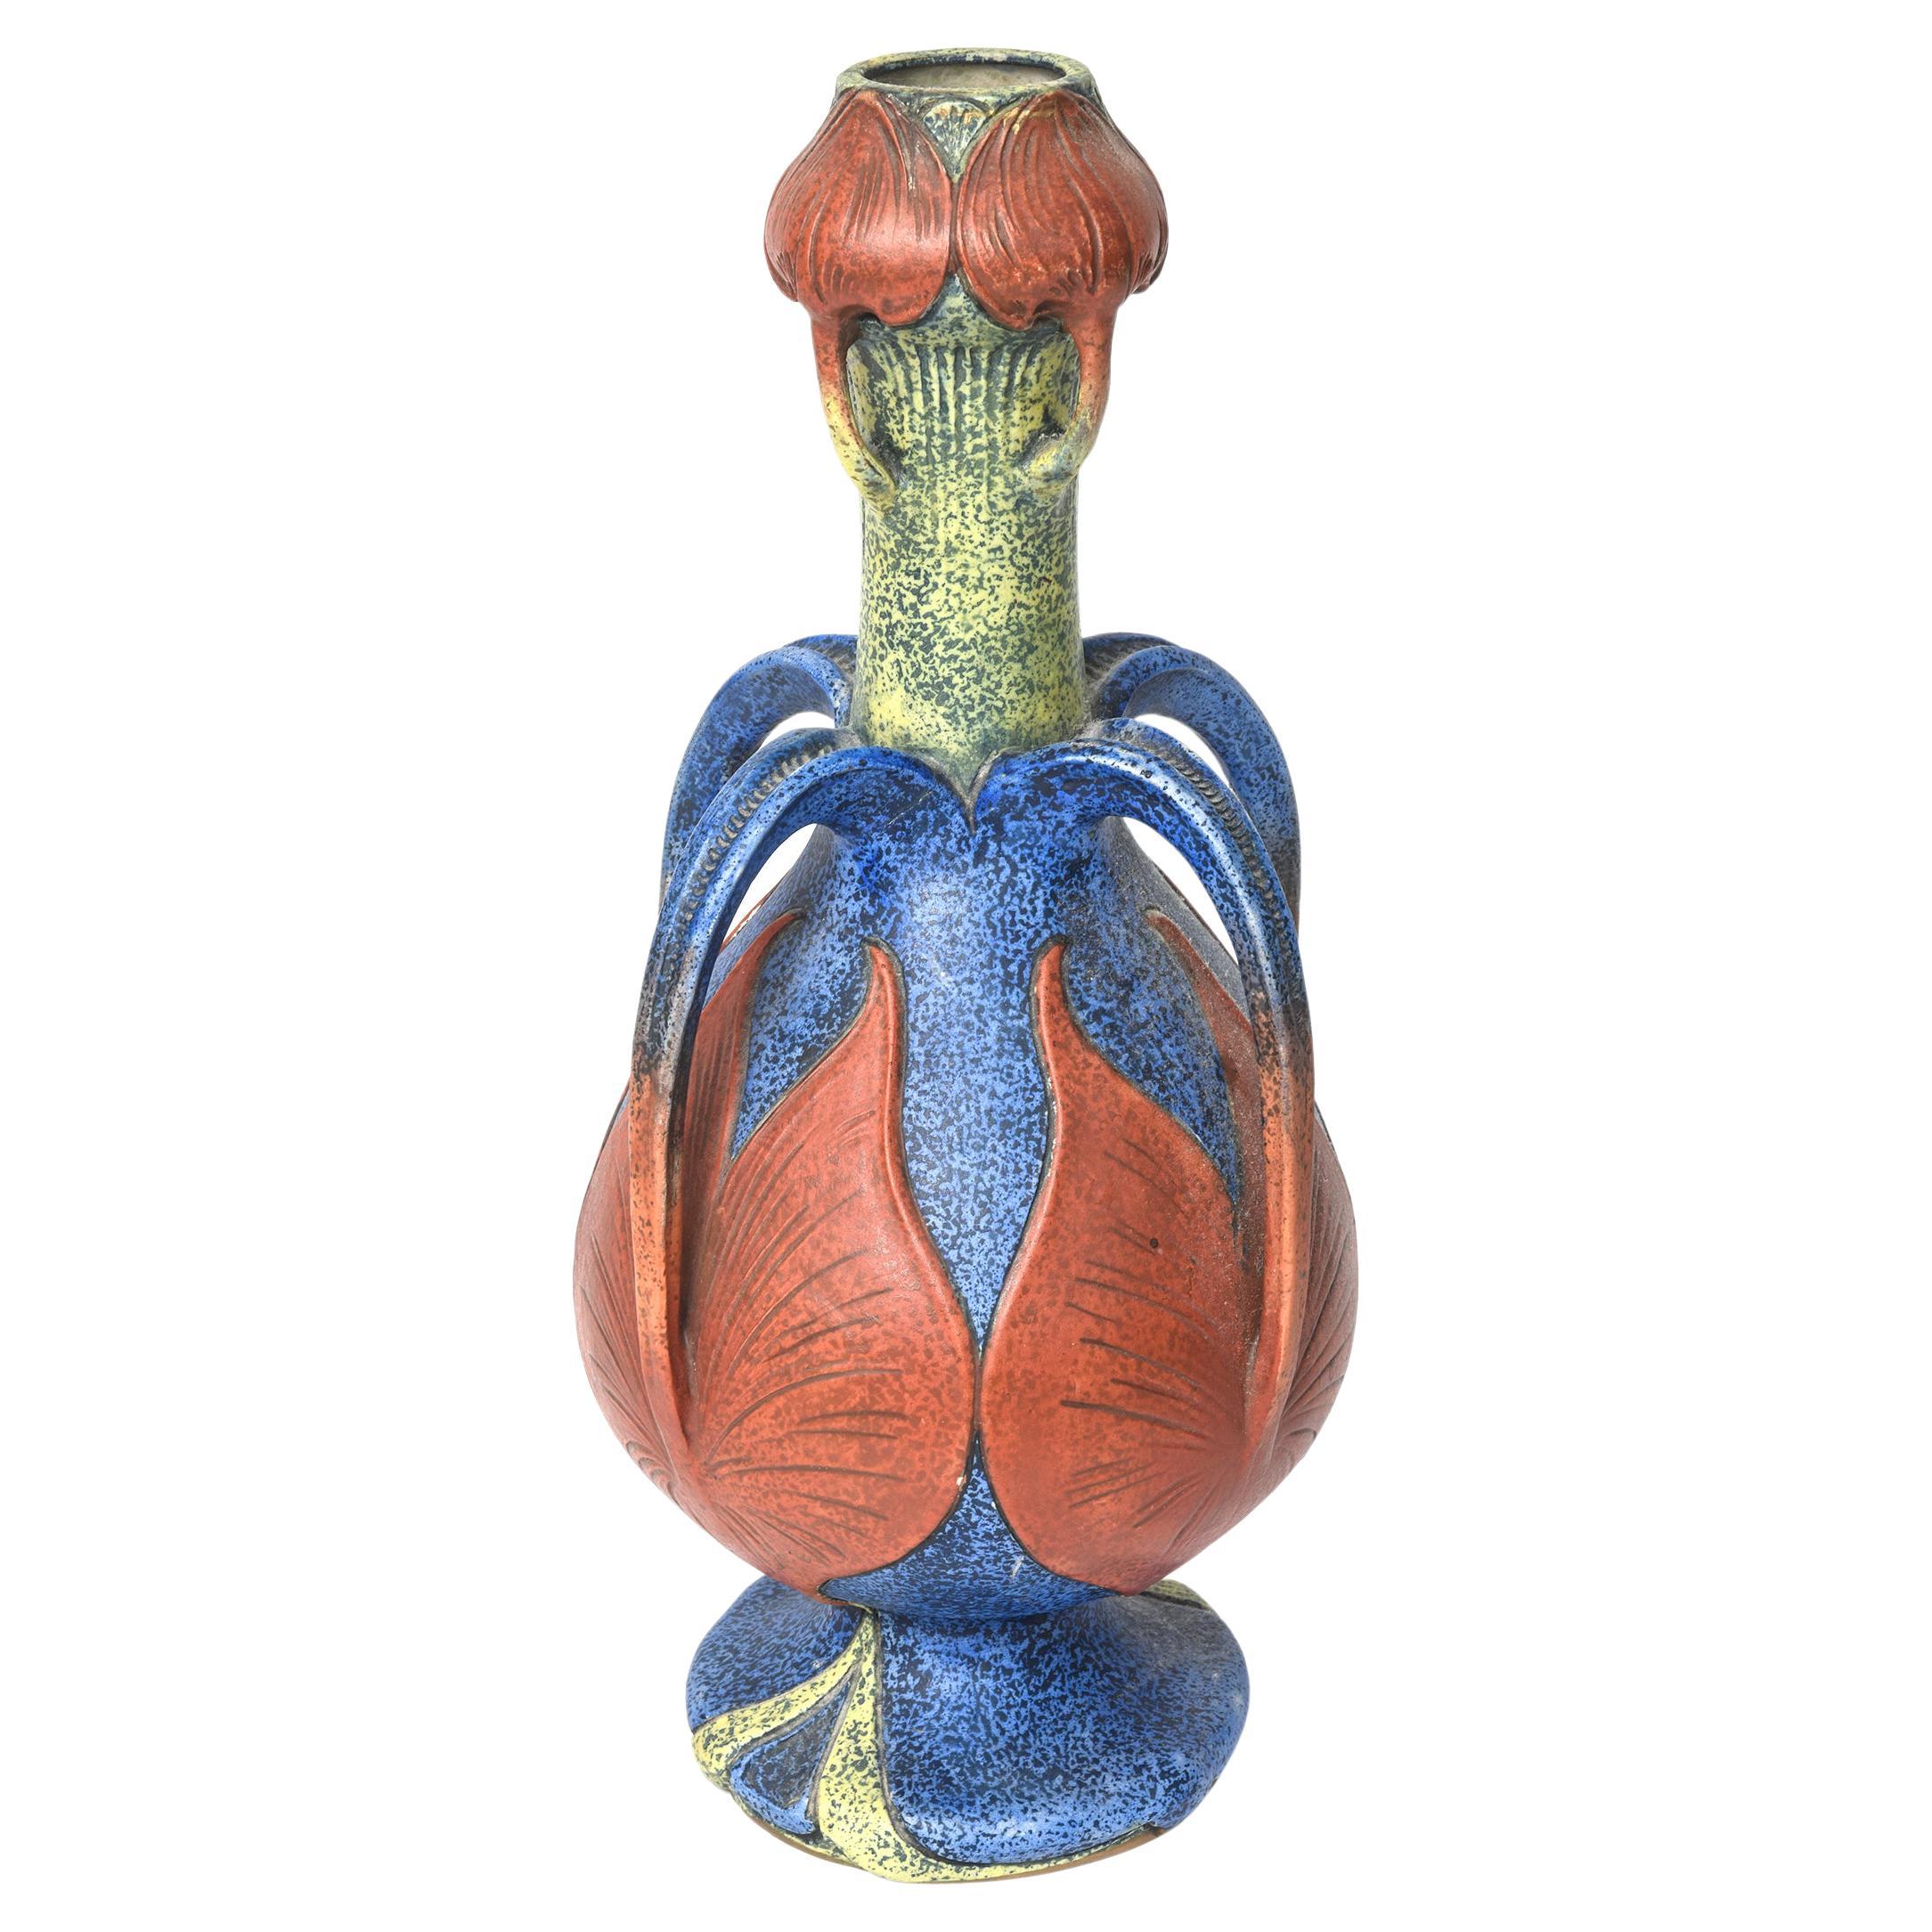 Grand vase à poignée Amphora Art Nouveau attribué à Paul Dachsel